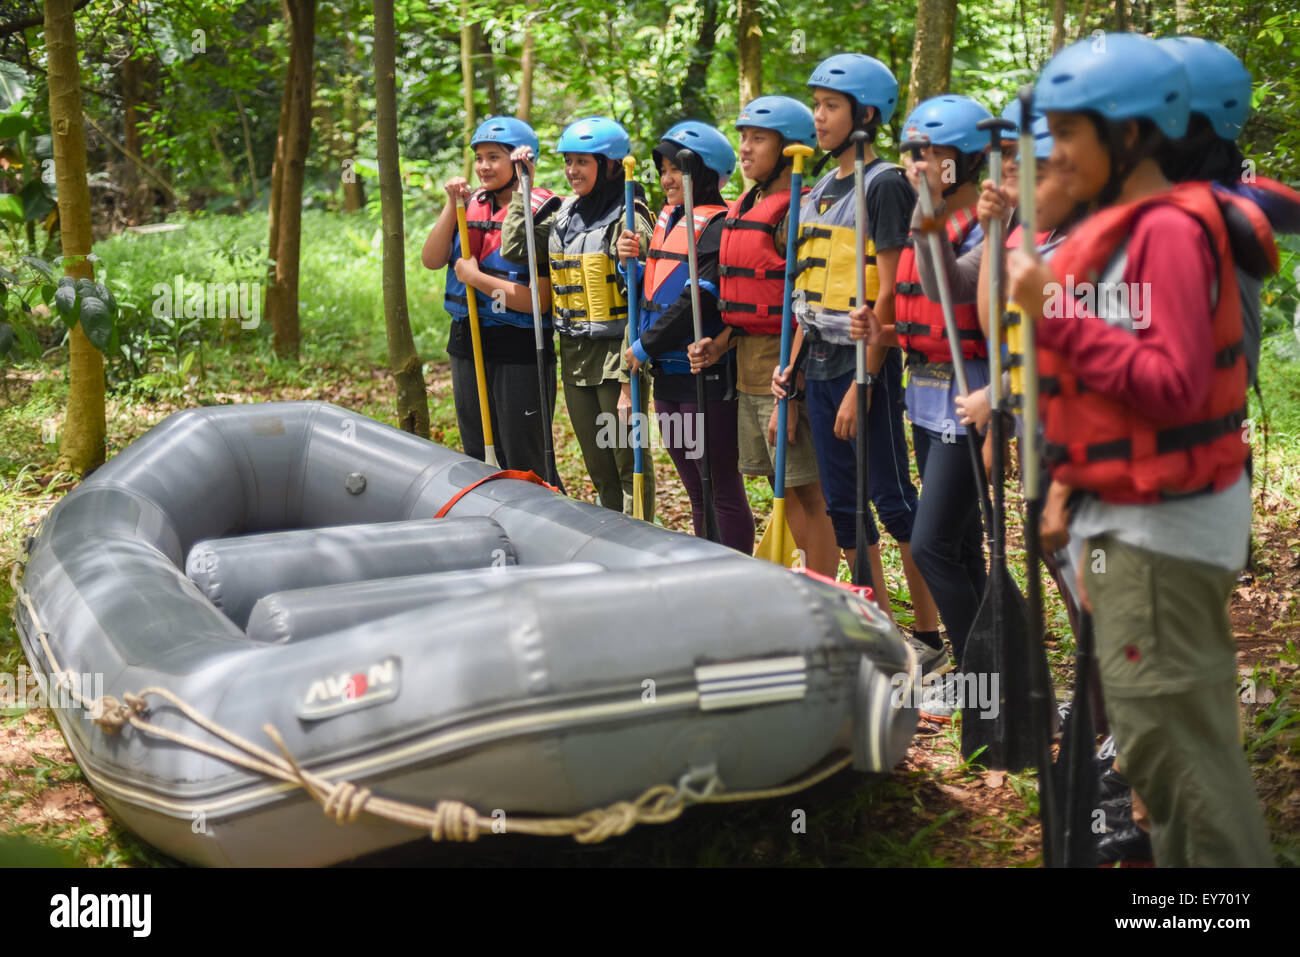 Jugendliche vorzubereiten für Wildwasser-rafting Ausbildung. Stockfoto